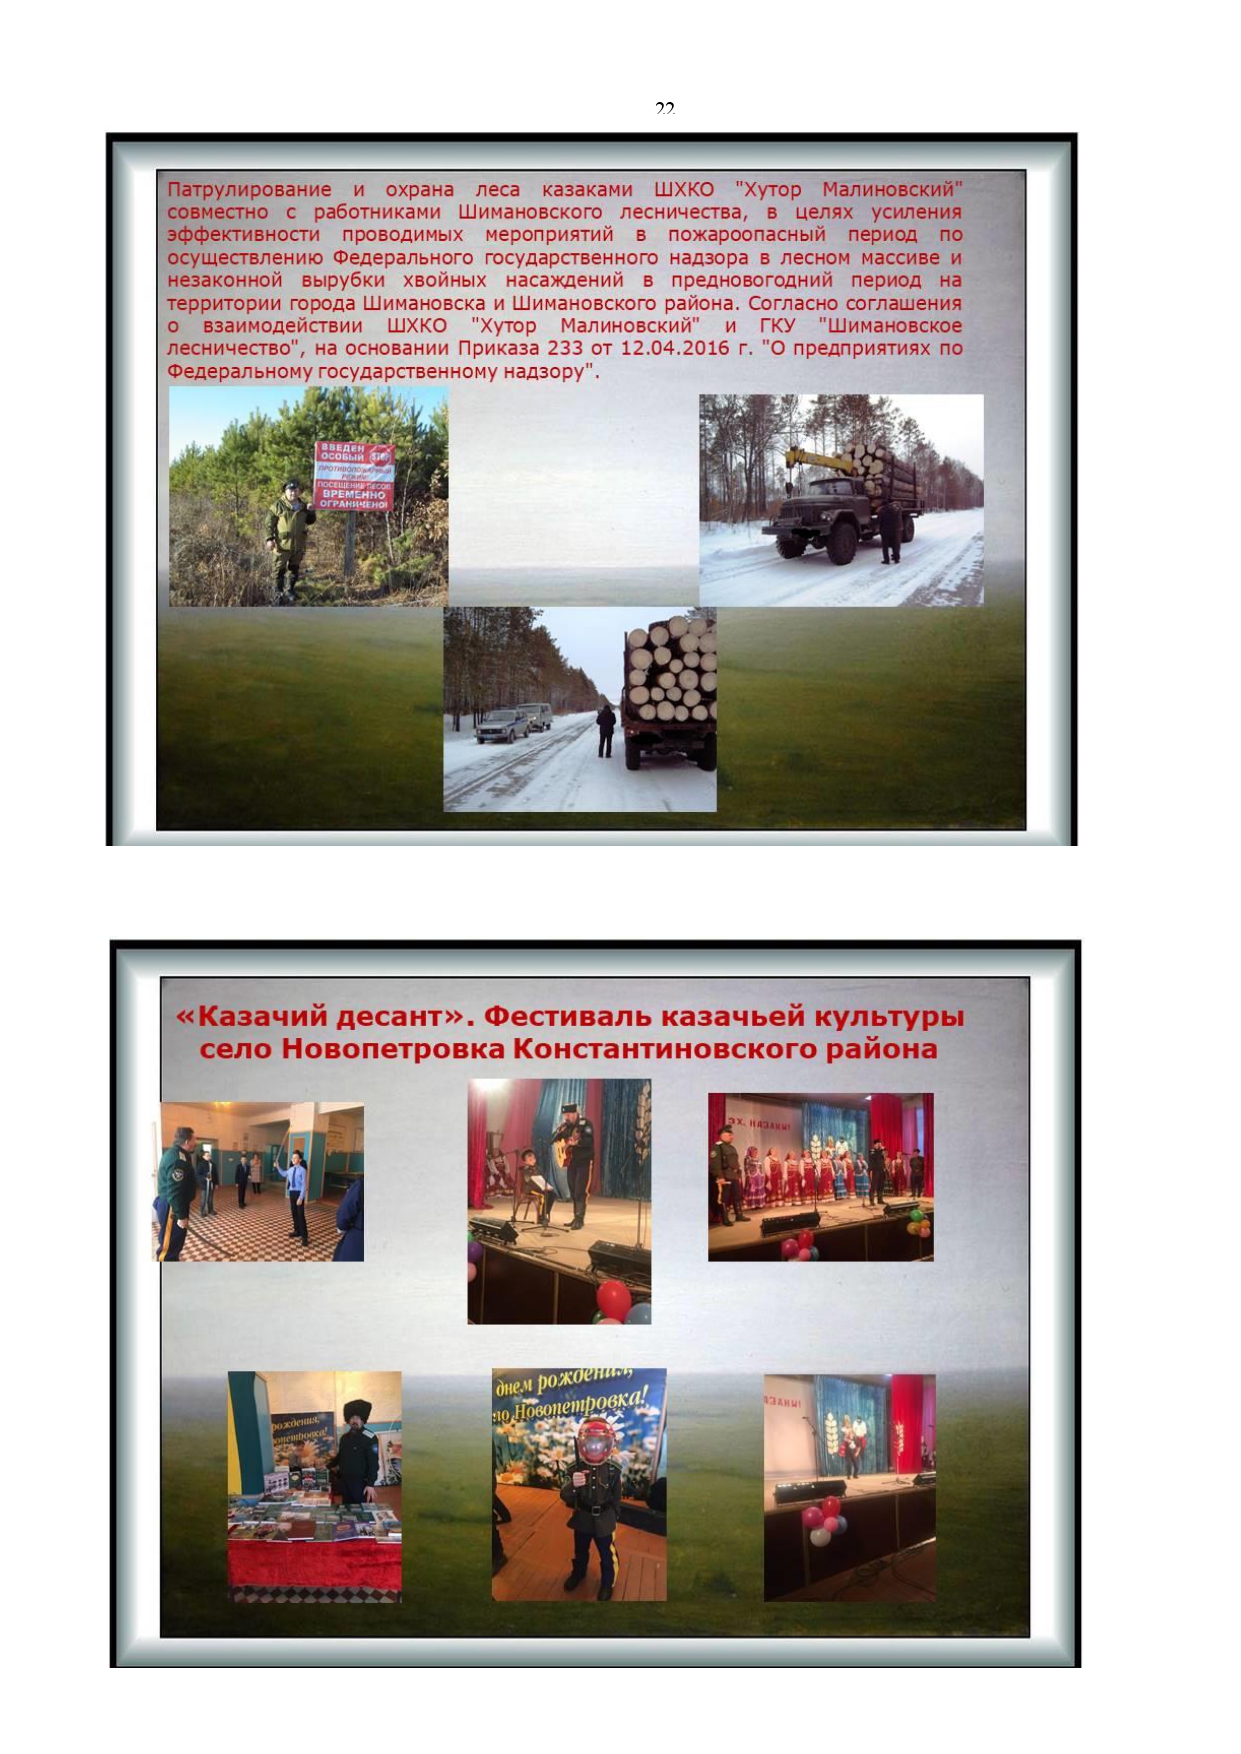 Публичный годовой отчет Амурского окружного казачьего общества за 2019 год Page 0022